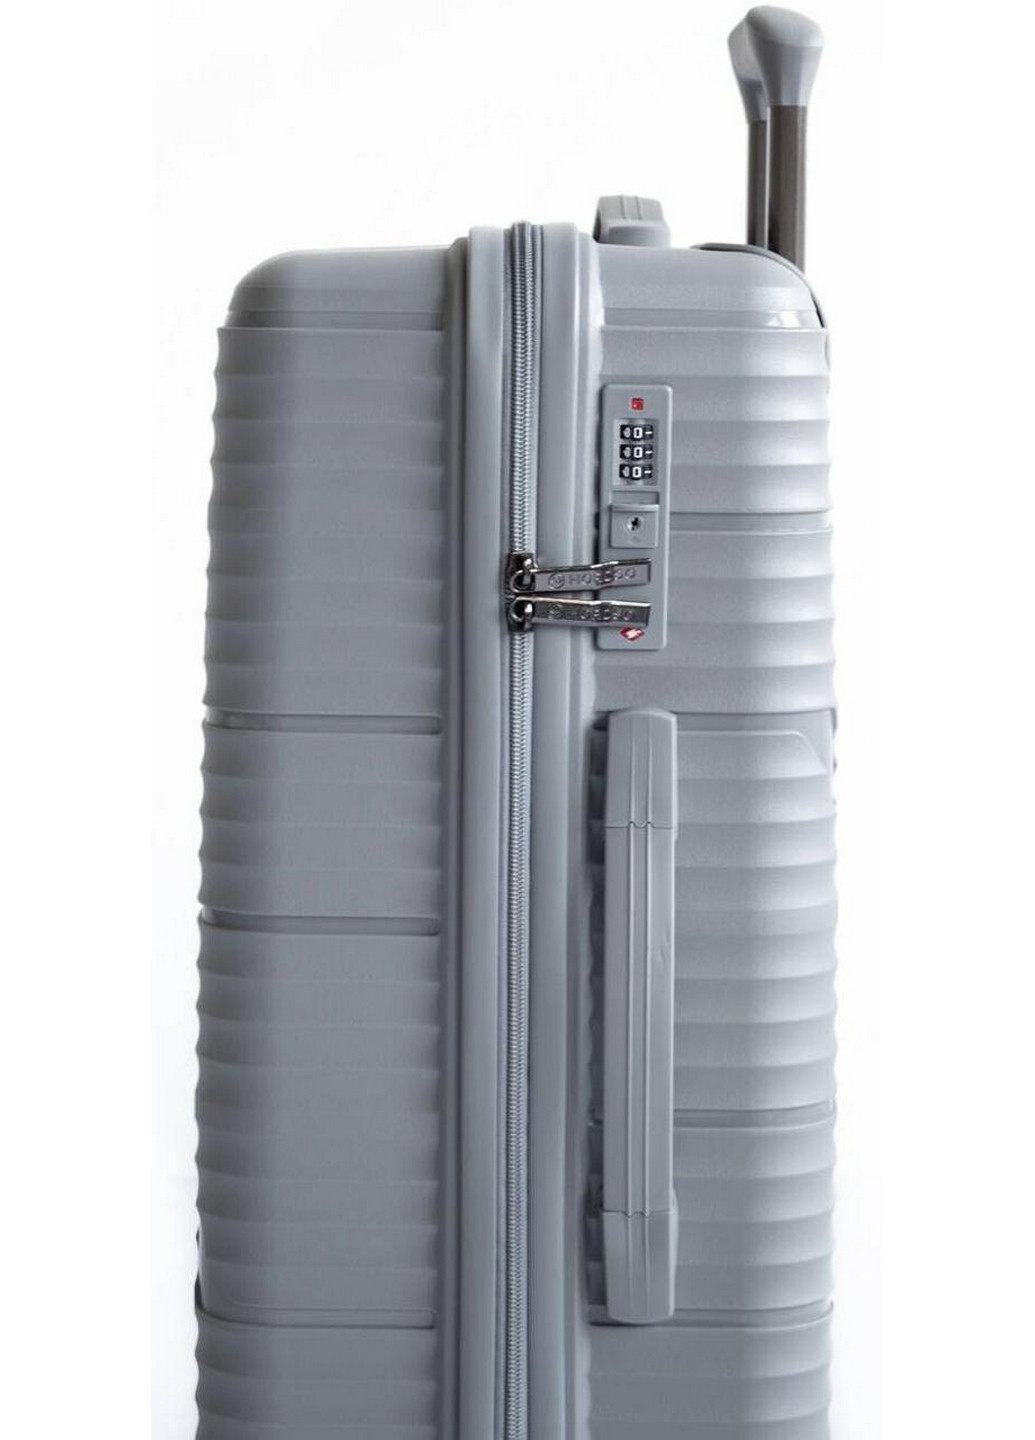 Пластиковый маленький чемодан из поликарбоната 36L Horoso (276983941)